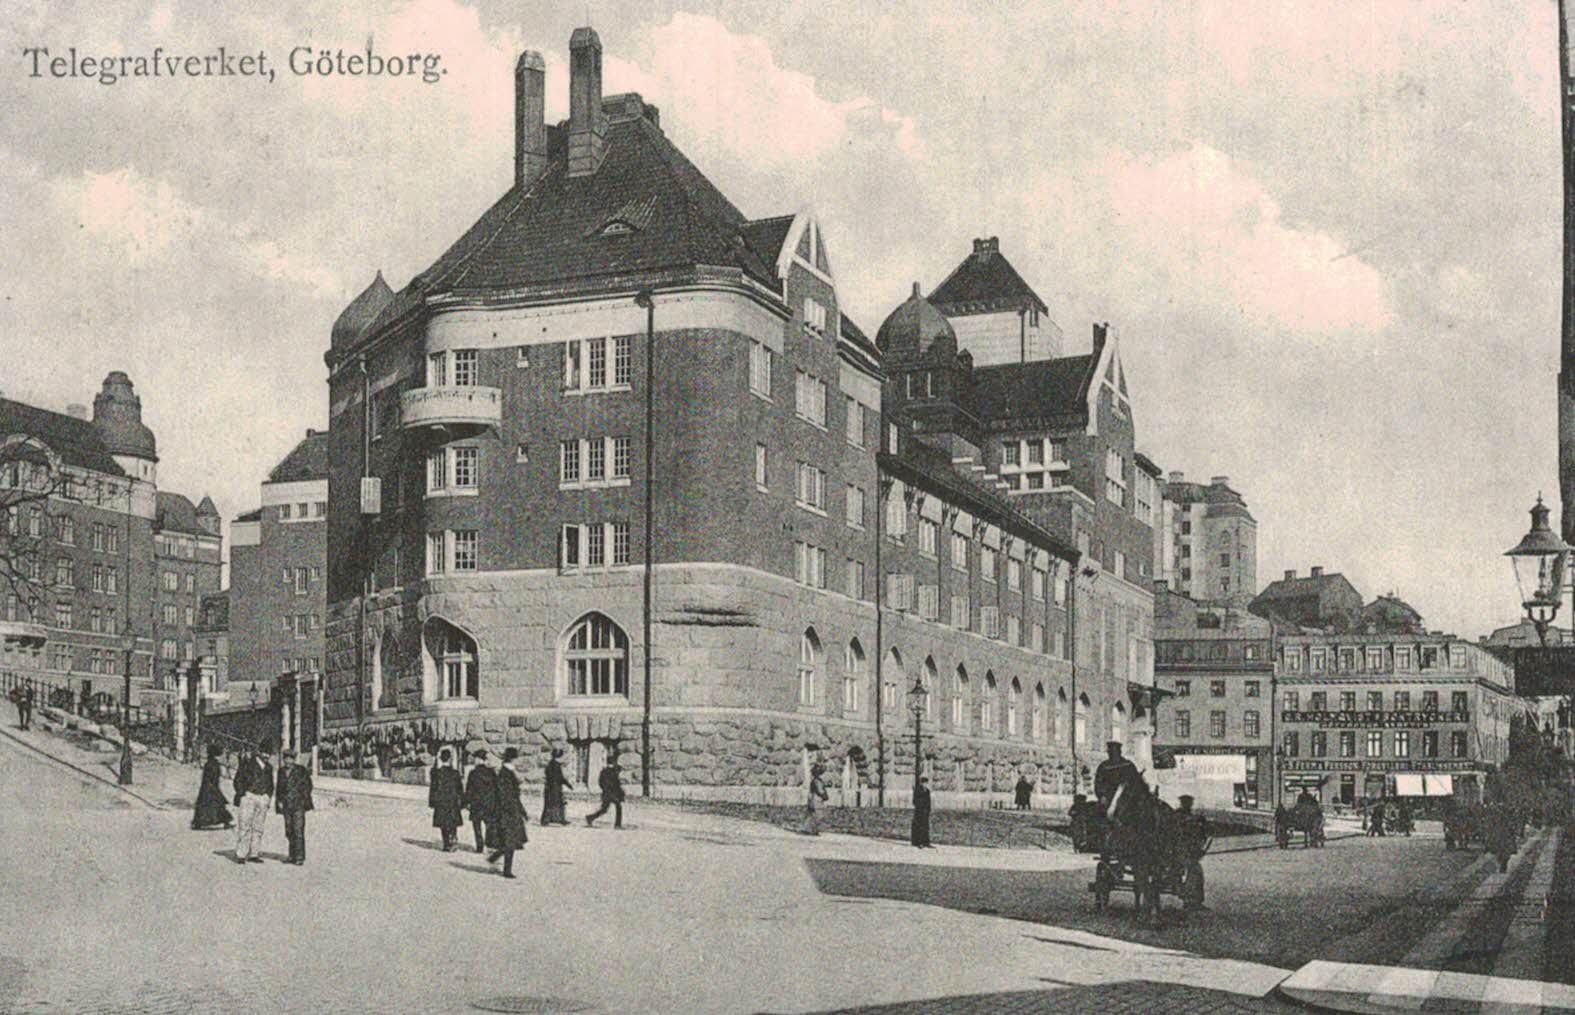 Goteborg,Sweden,Telegrafverket,c.1909